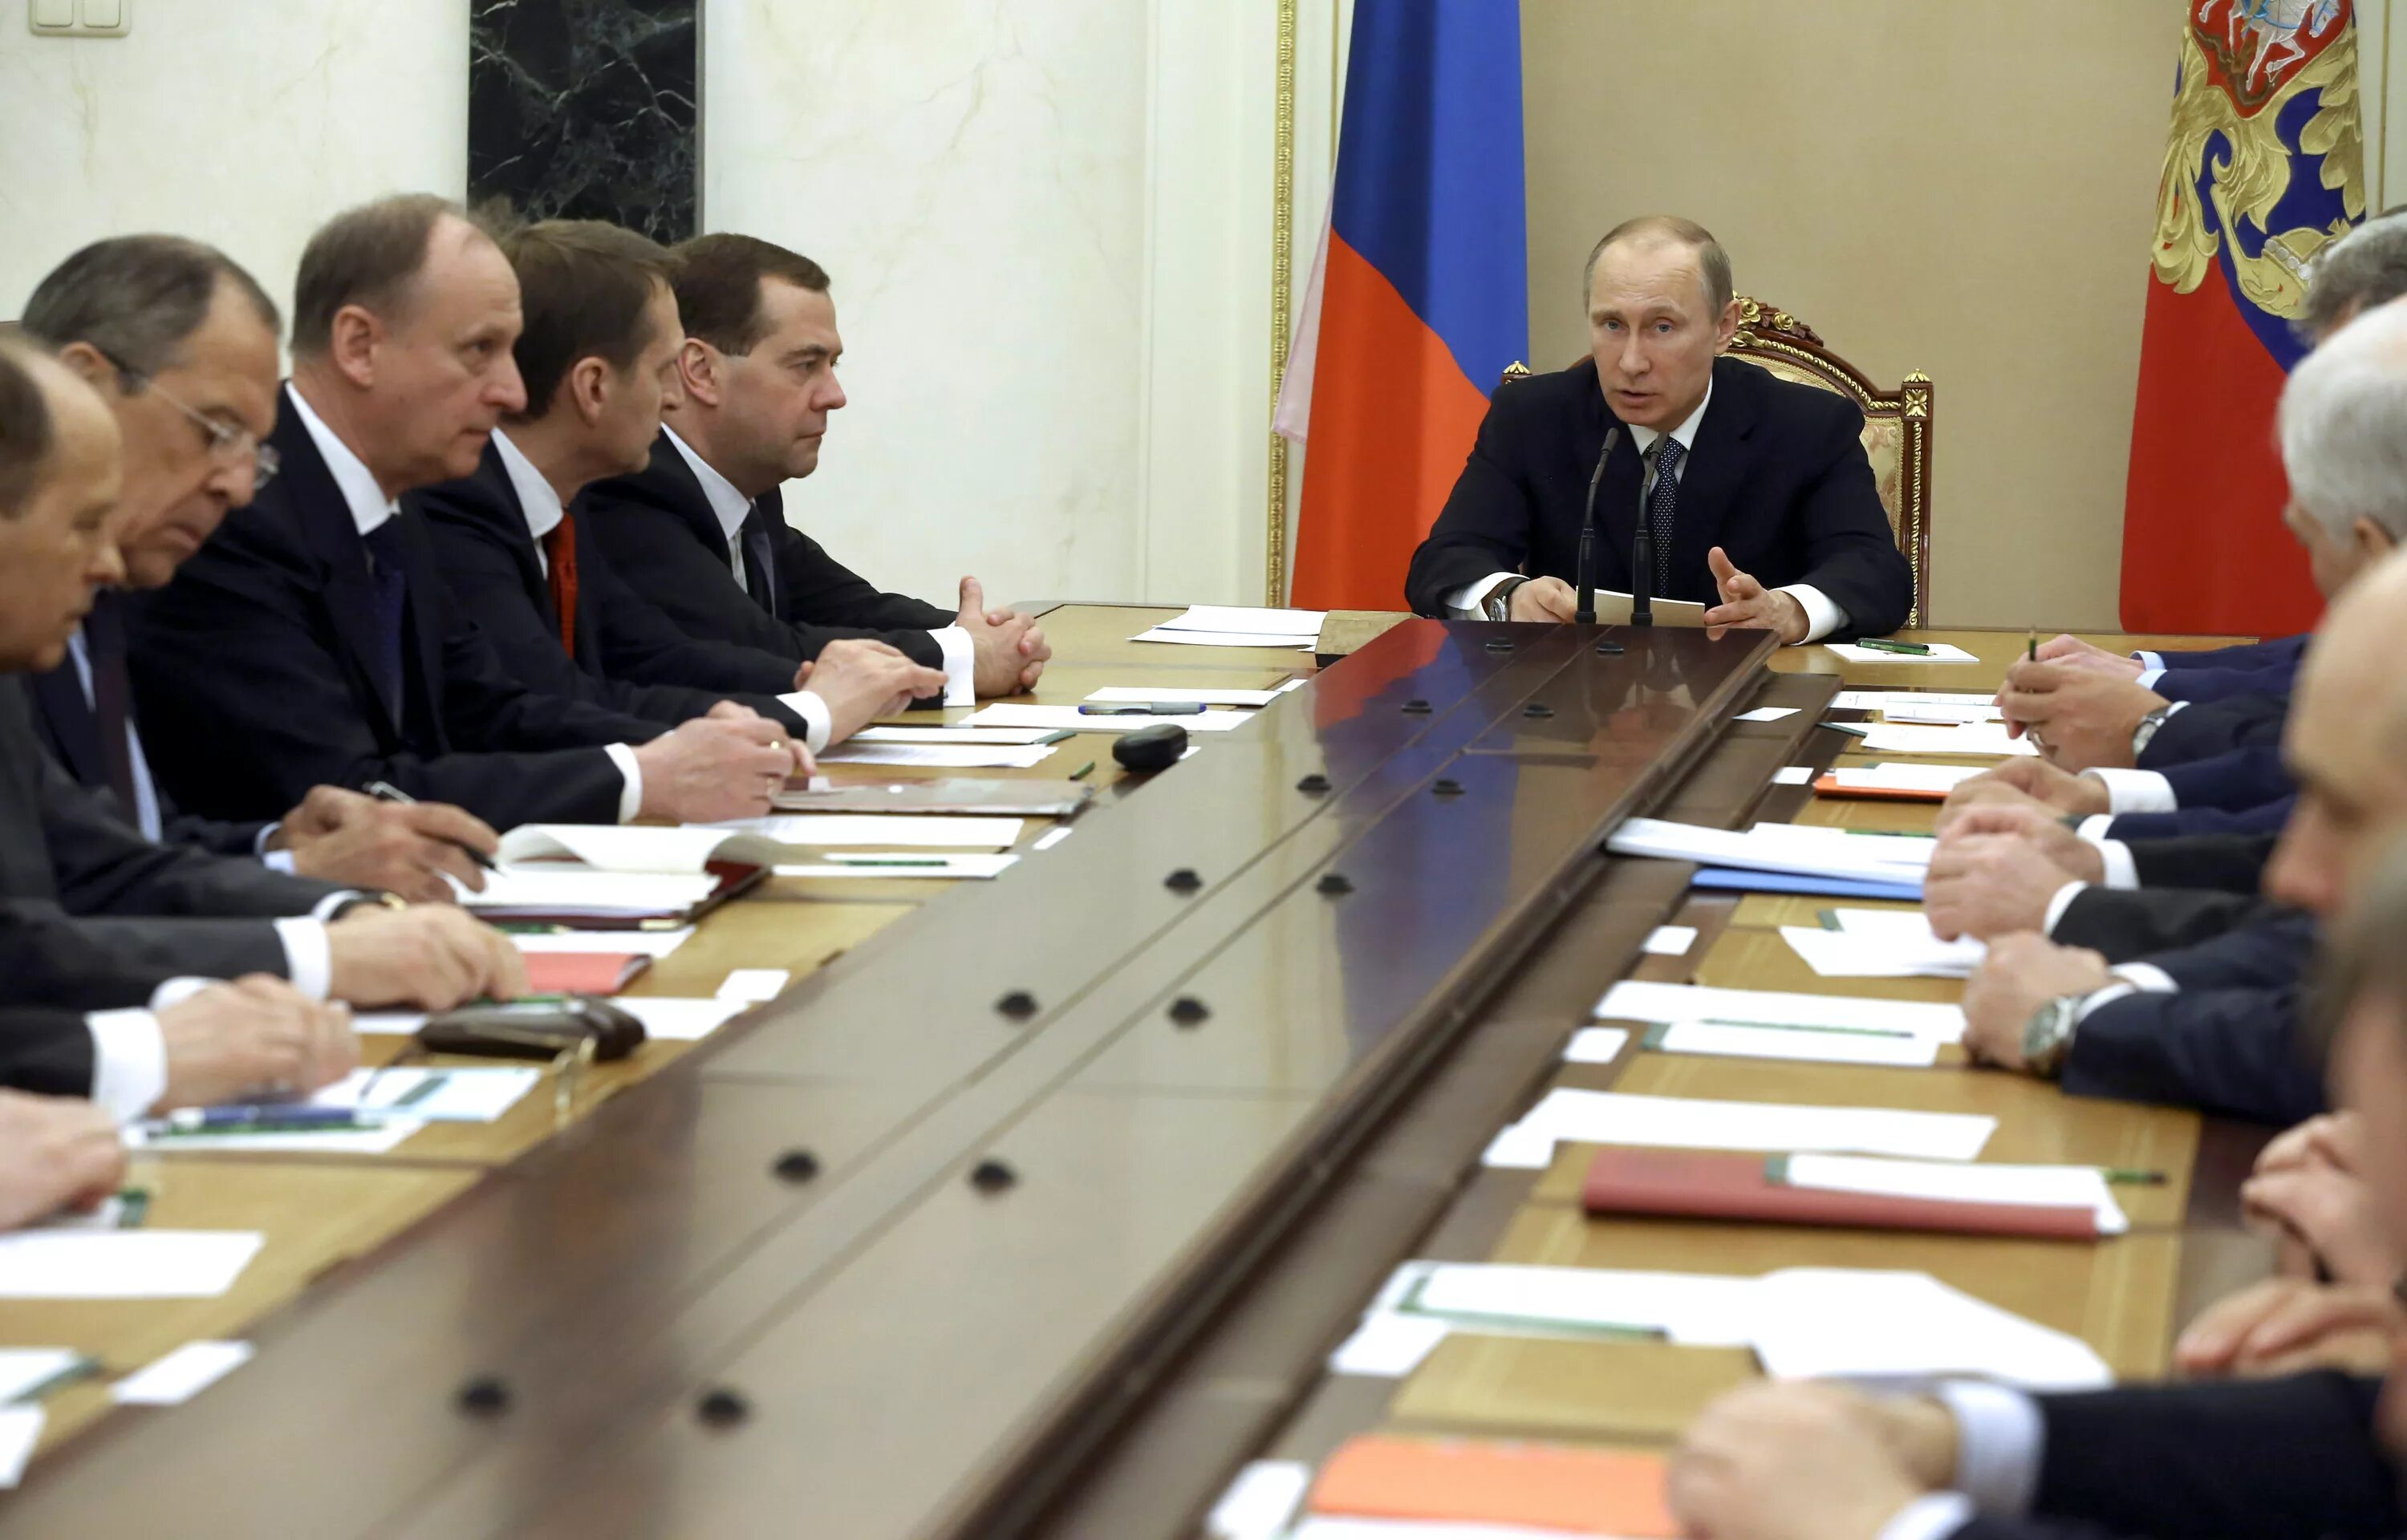 5 совет безопасности. Совещание Путина с правительством совета безопасности РФ.